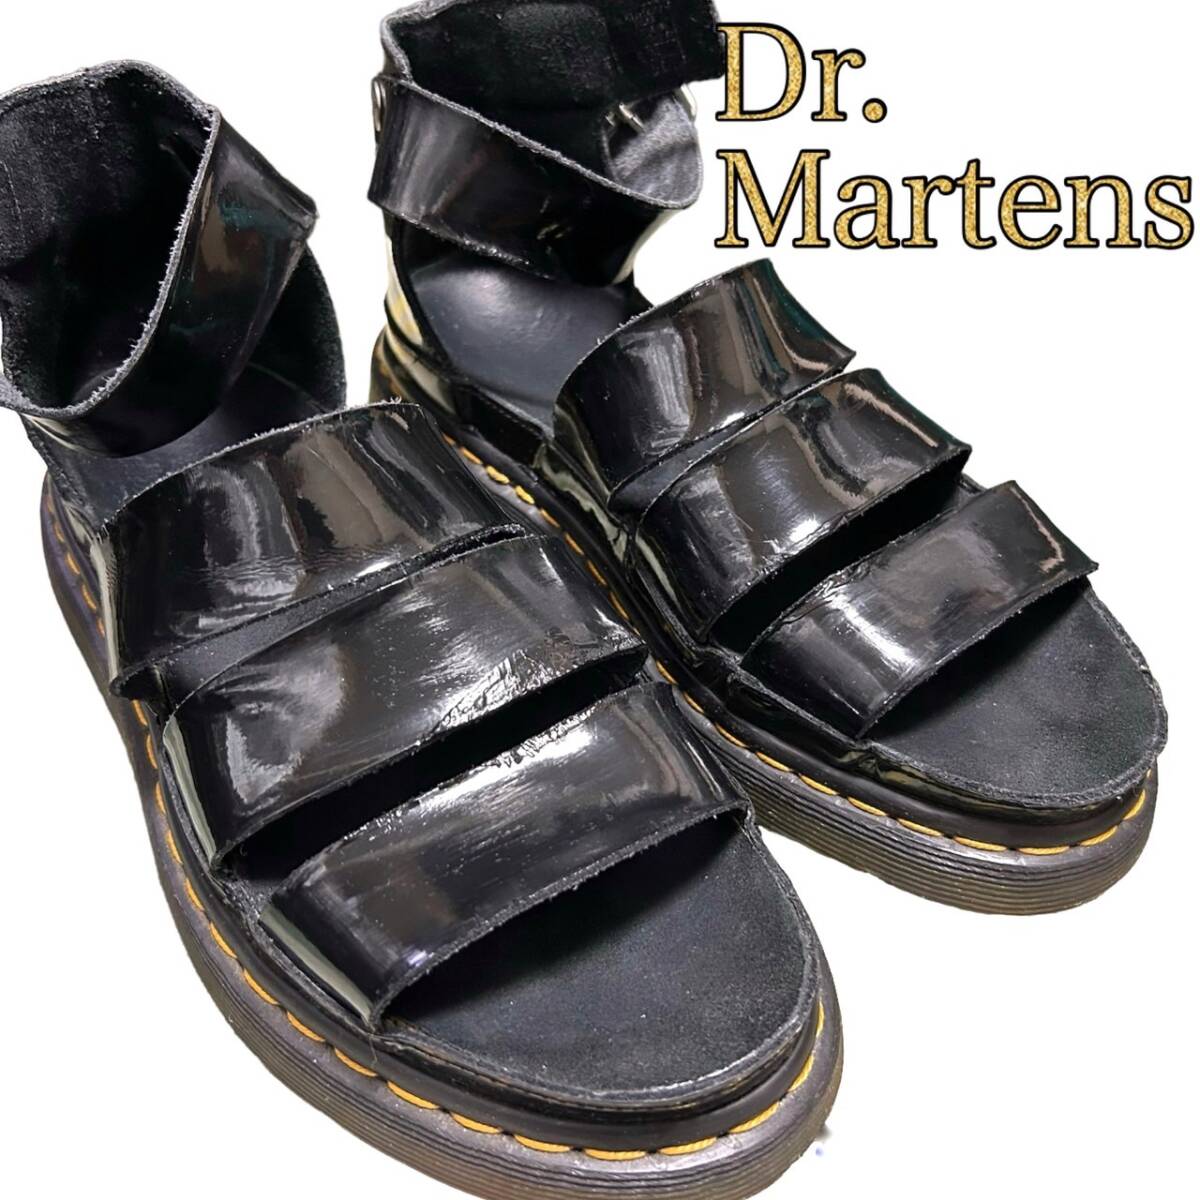 DR. MARTENS ドクターマーチン☆クラリッサ☆エナメル パテントレザー サンダル 25.0cm相当 黒 ブラック メンズ CLARISSA 靴 革靴_画像1